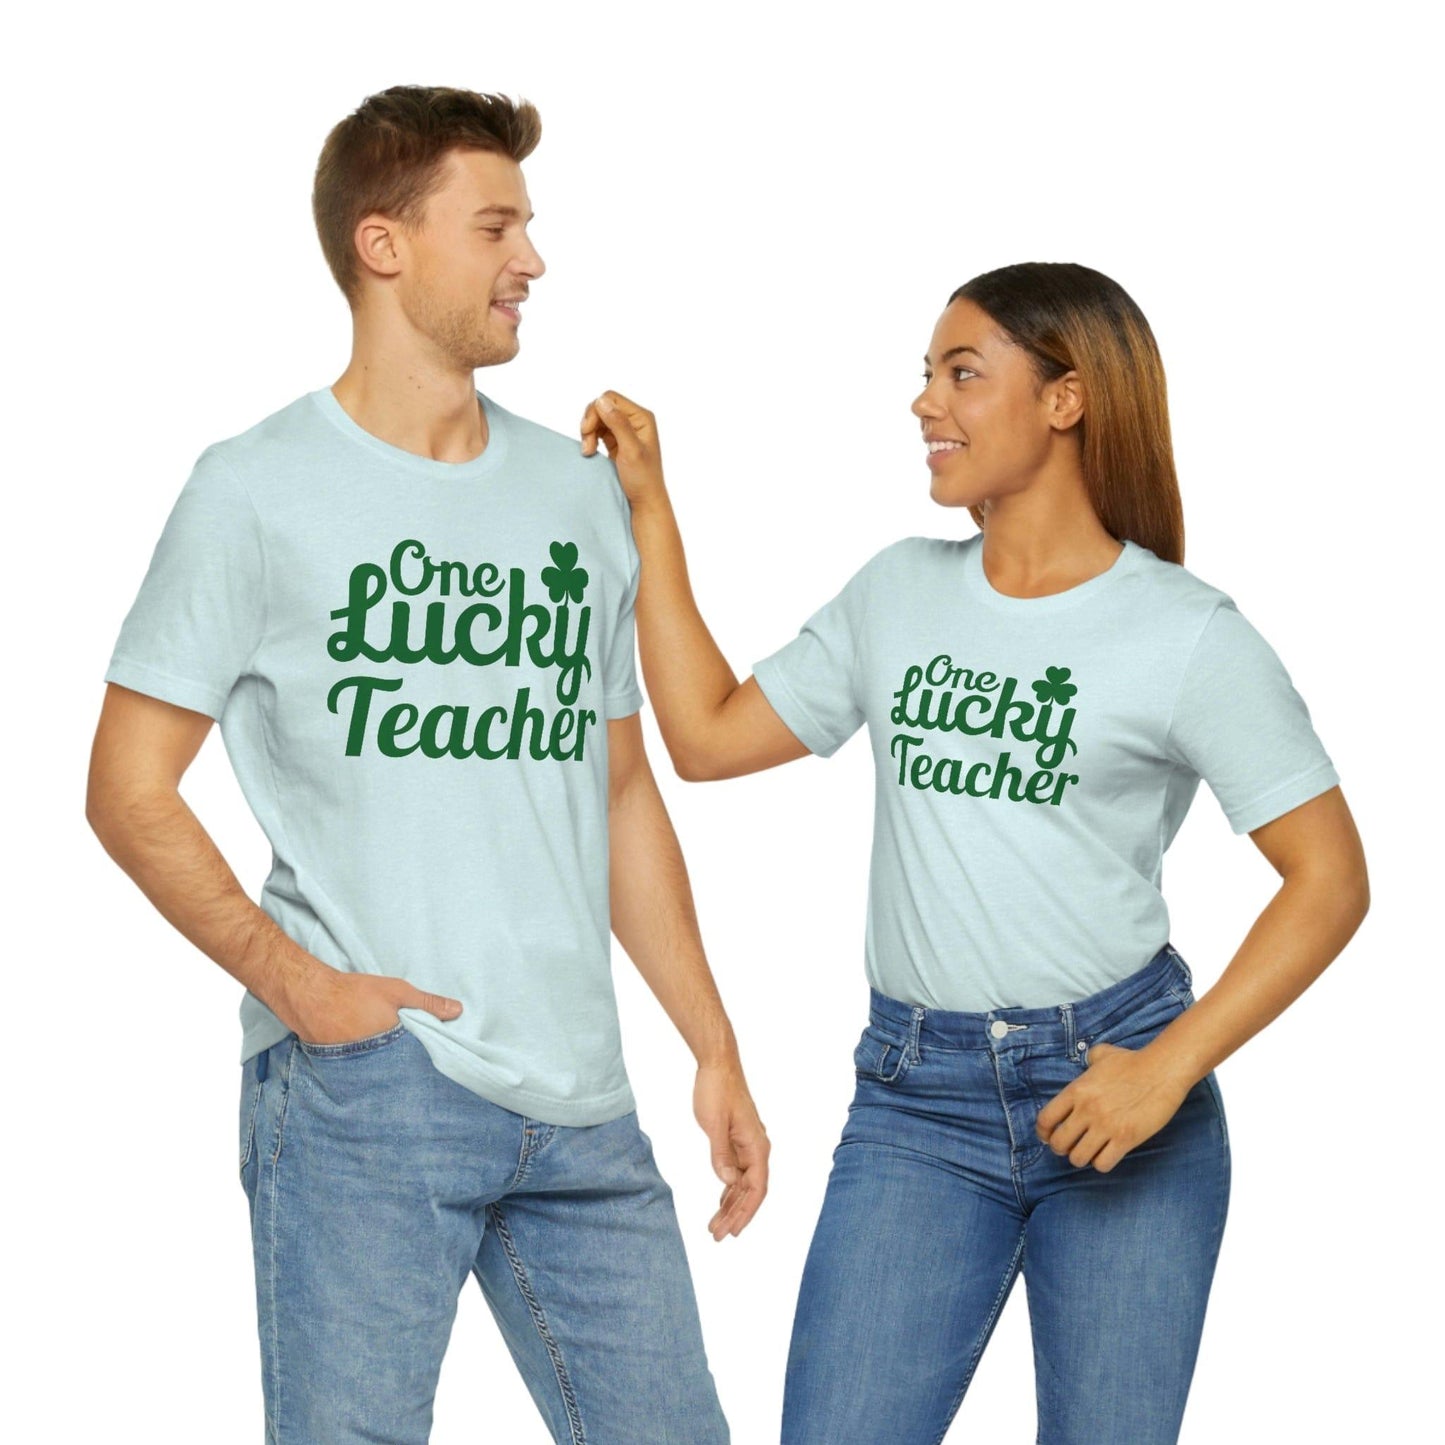 One Lucky Teacher Shirt feeling Lucky St Patrick's Day shirt - Funny St Paddy's day Funny Shirt gift for teacher shirts teacher gift